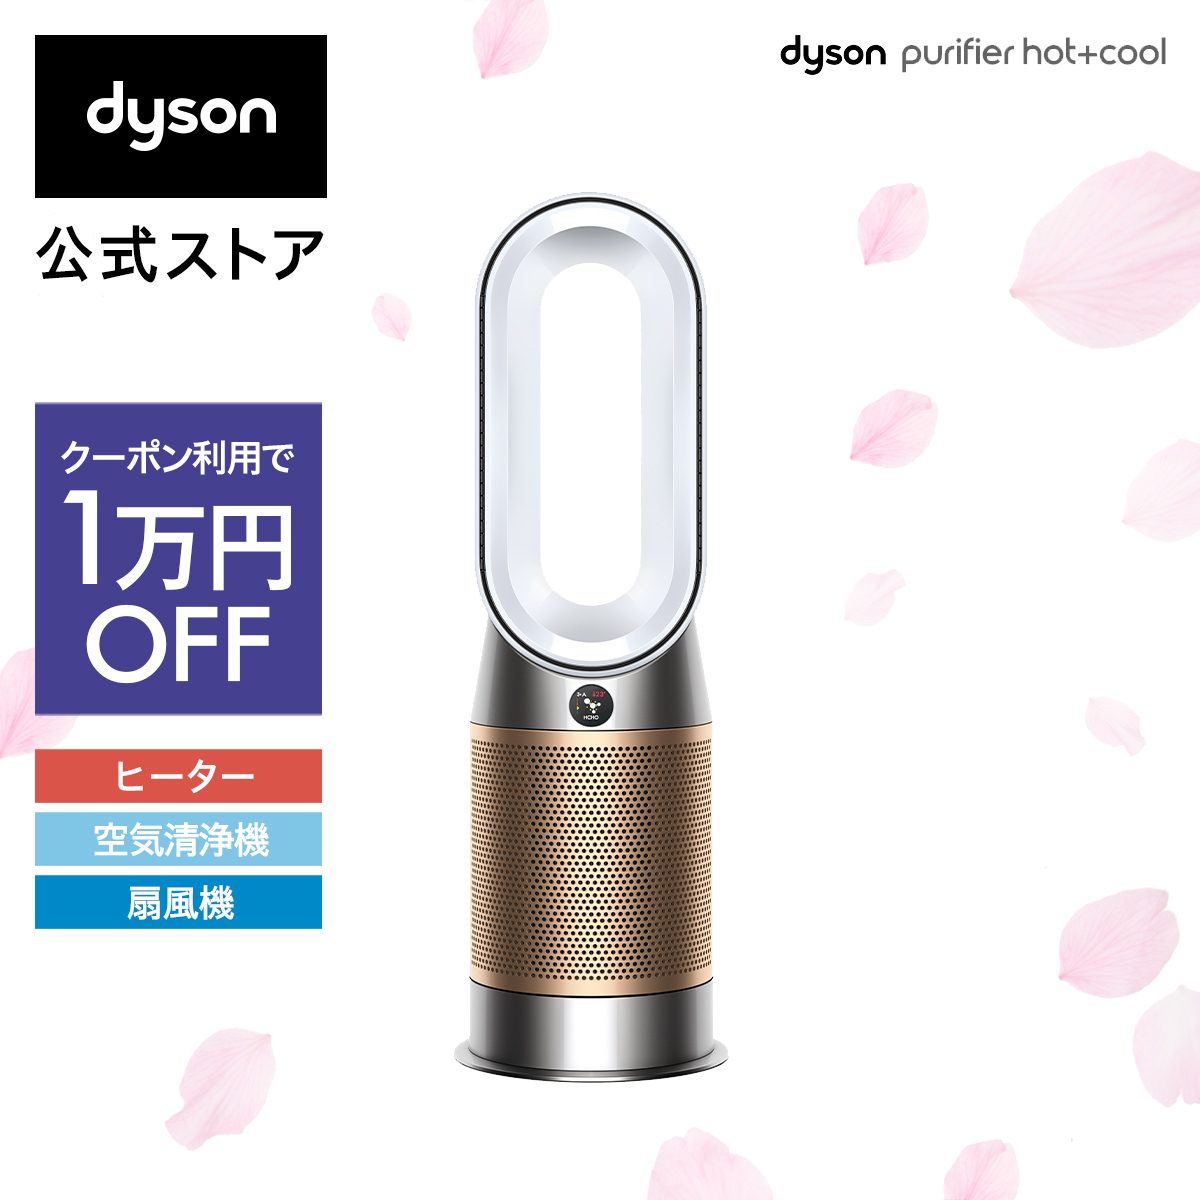 【楽天市場】【クーポン利用で8,000円OFF】【Dyson上位モデル